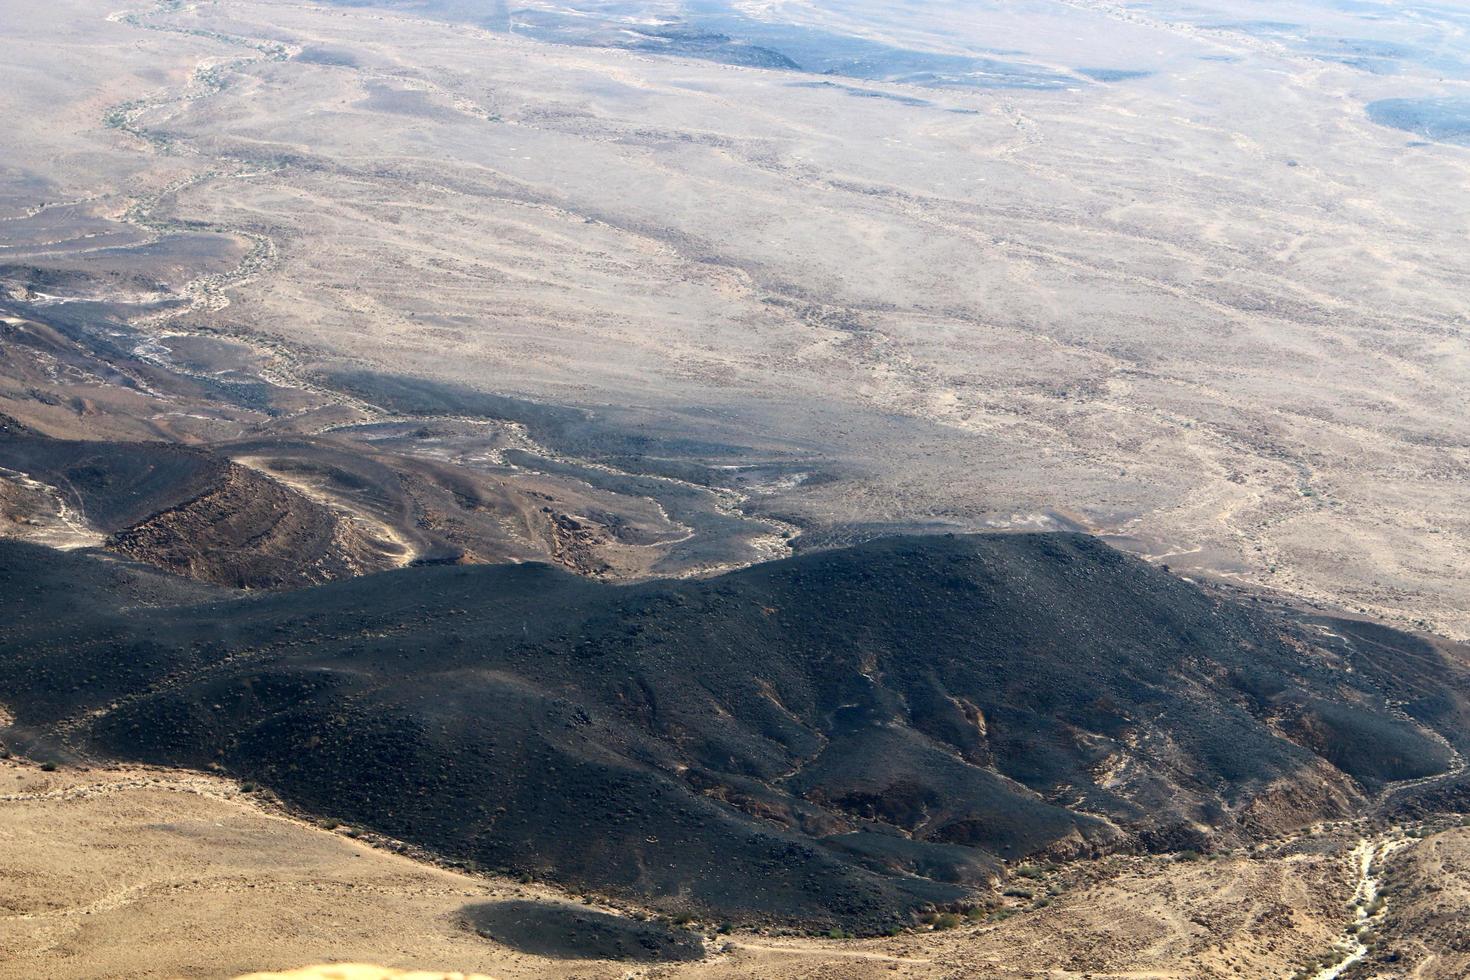 mitzpe ramon israel le 1er novembre 2019. le cratère de ramon est un cratère d'érosion dans le désert du néguev dans le sud d'israël. photo